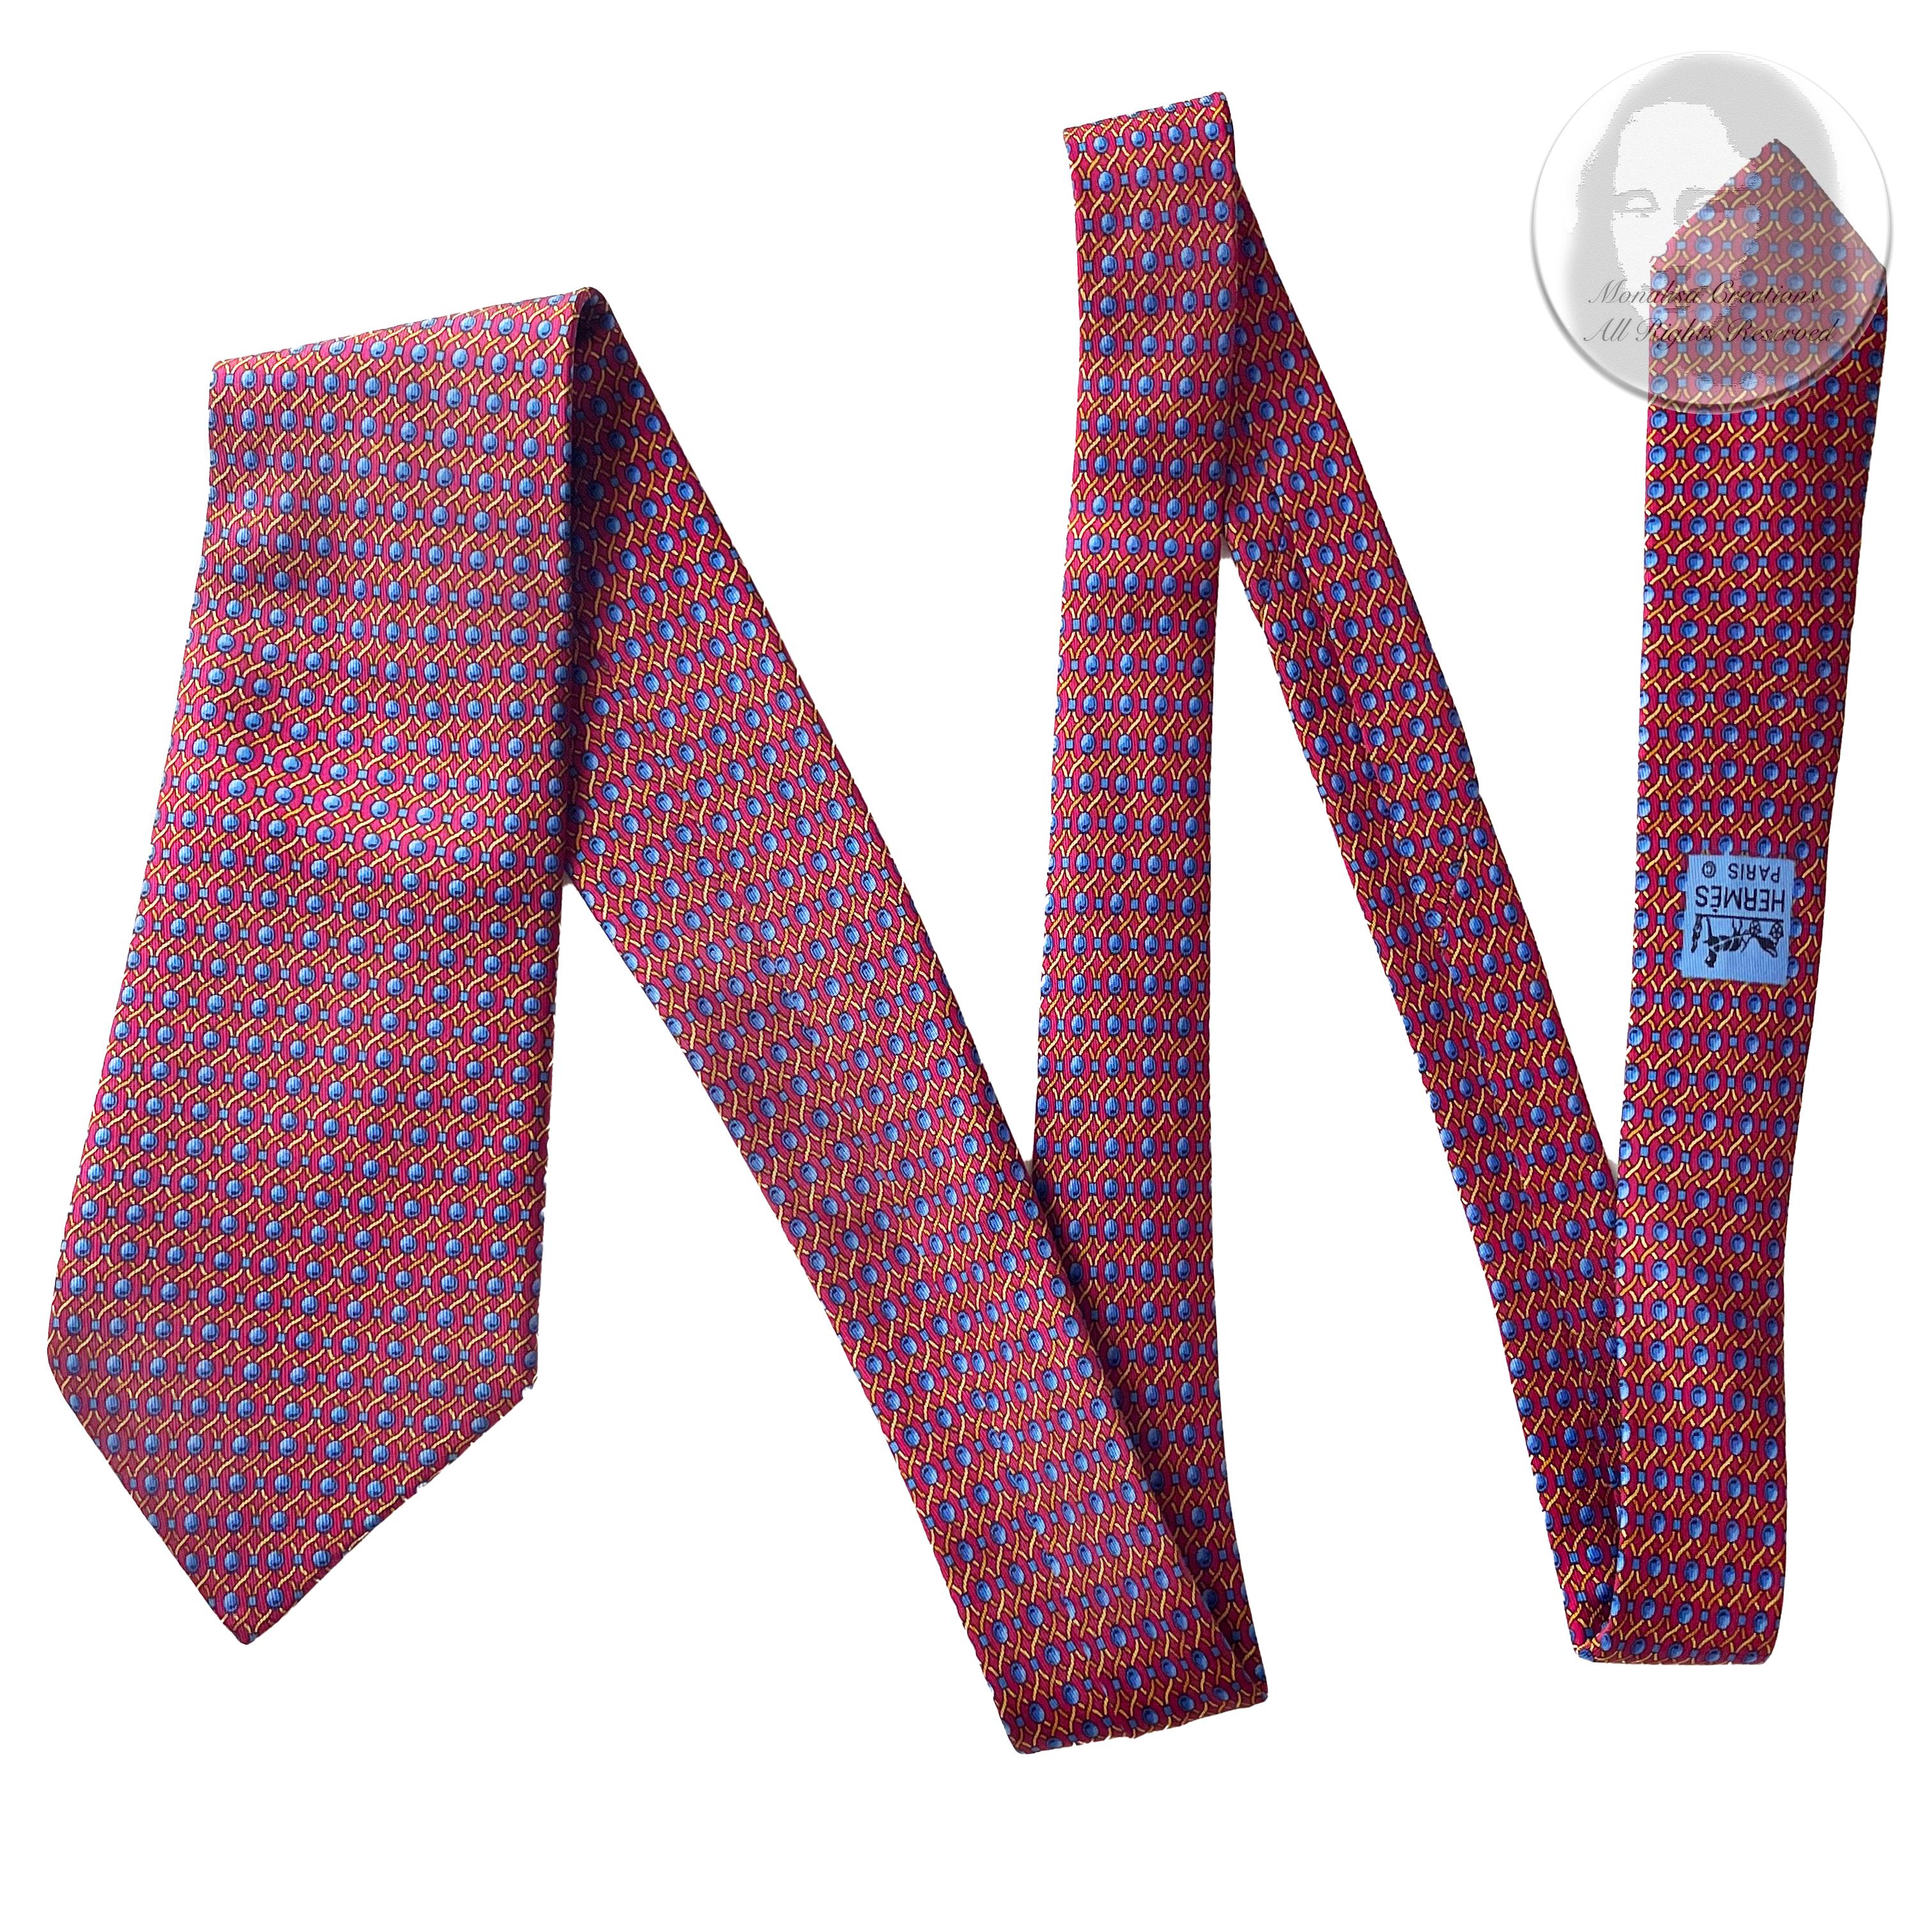 Cravate Hermès en soie imprimée corde abstraite 7242 MA 1990 1